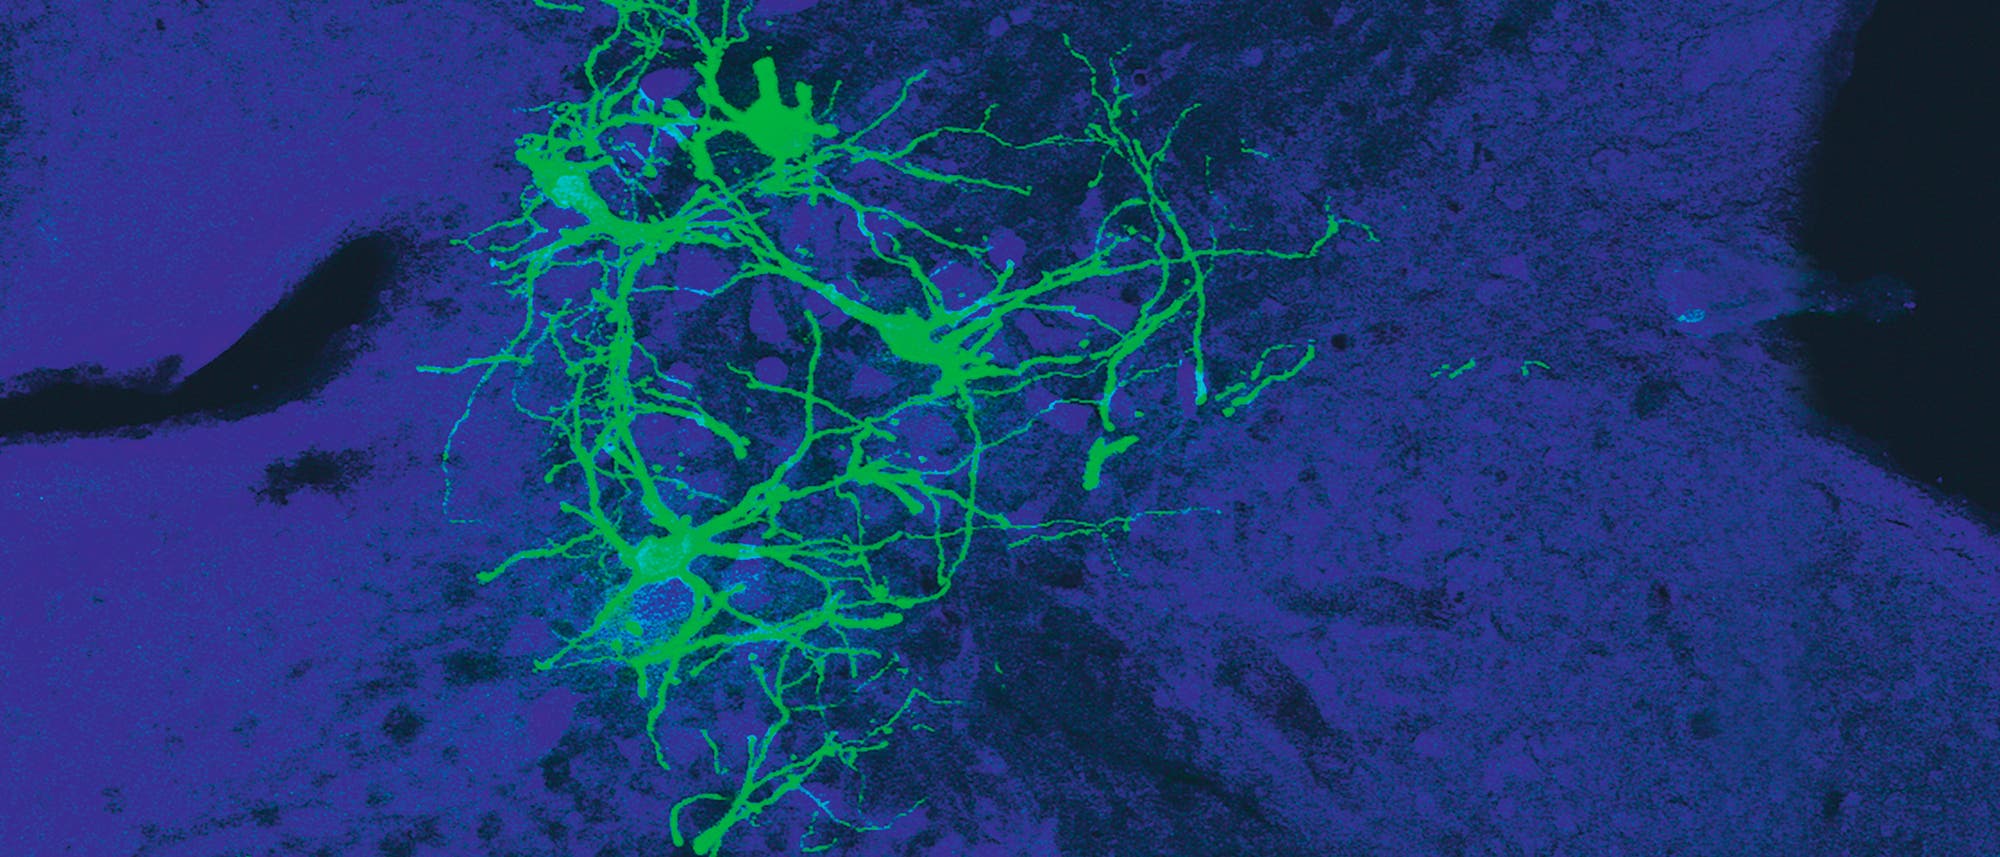 Das Bild zeigt den lateralen vestibulären Nukleus im Hirnstamm einer Maus. Die grün leuchtenden Neurone sind mit einem gentechnisch veränderten Tollwutvirus infiziert. 